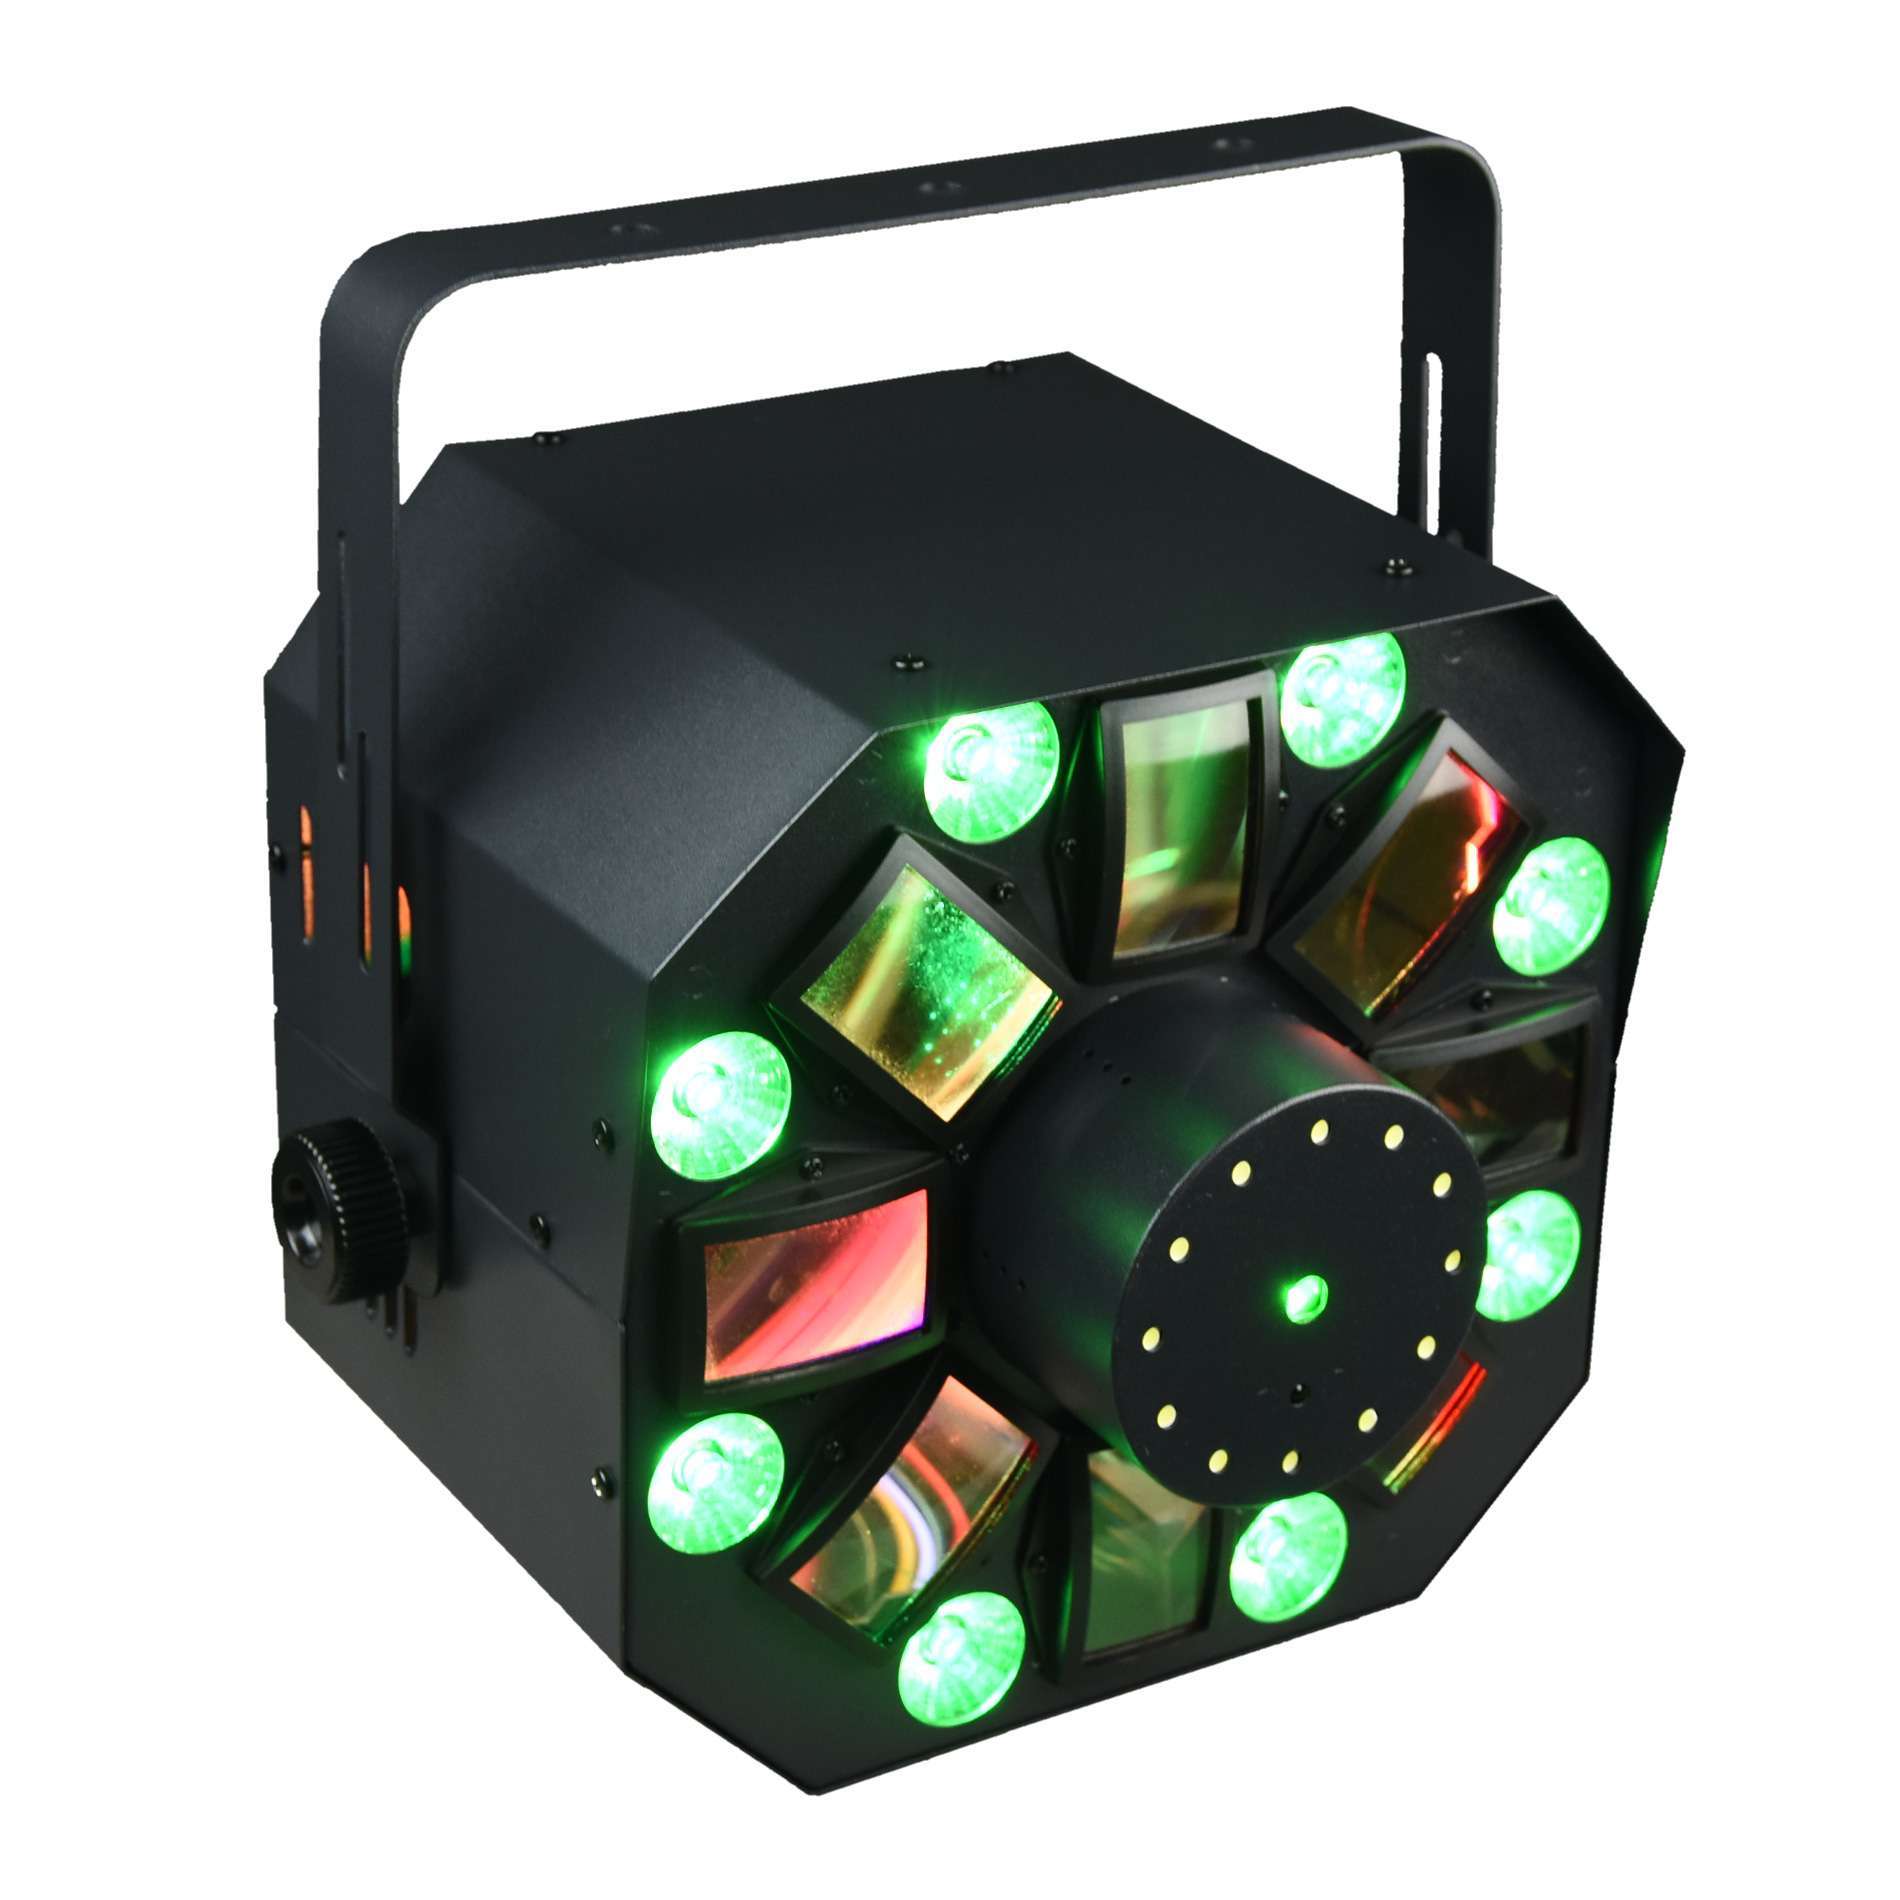 http://www.festiland-vendome.fr/upload/catalogue/produit/festiland/d3/279_jeux-de-lumiere-4-en-1-multi-faisceauxwash-strobe-laser-multipoints-rouge-et-vert.jpeg